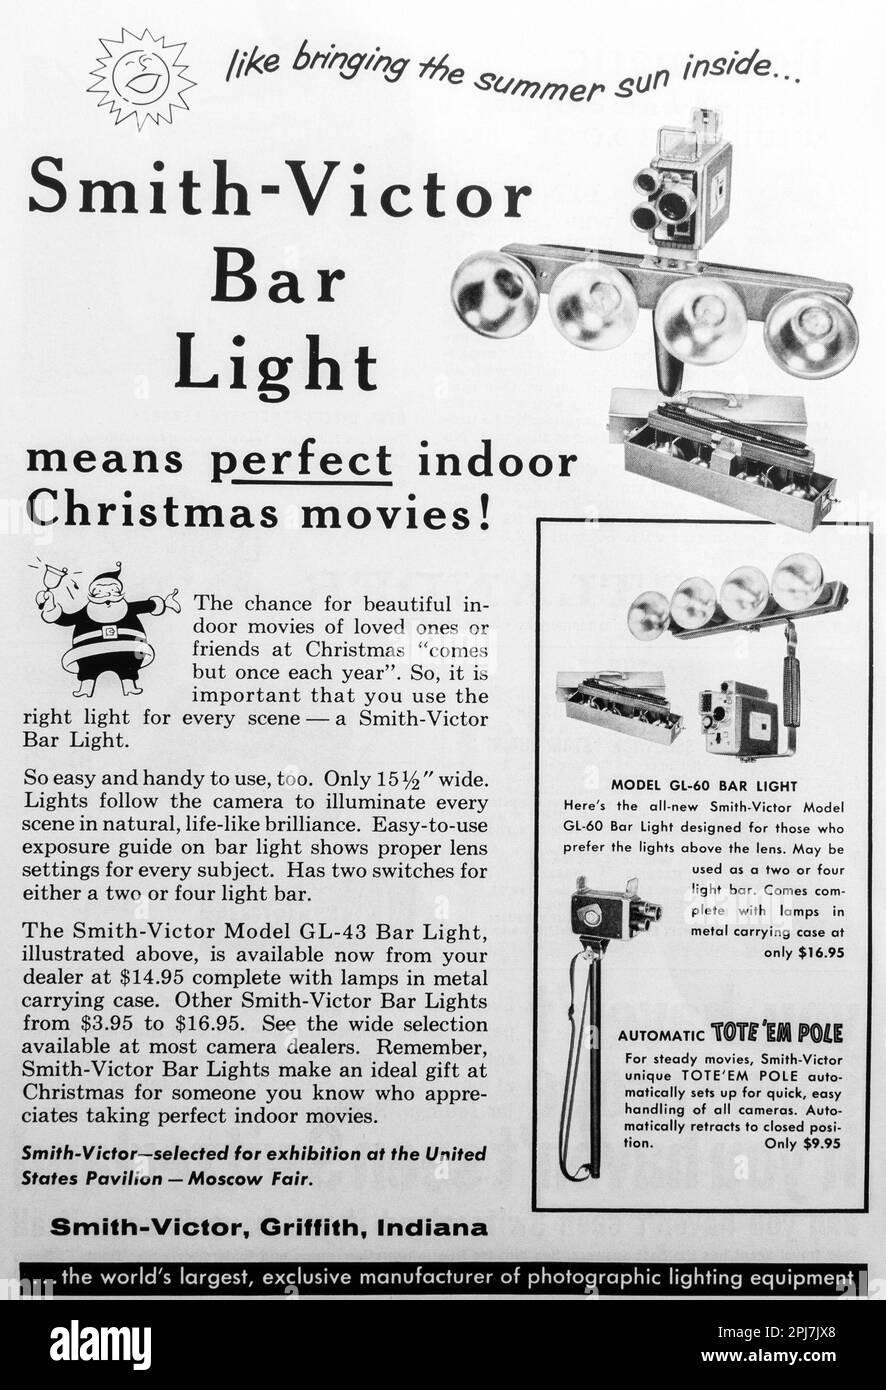 Barre lumineuse Smith-Victor - publicité de films de Noël en intérieur dans un magazine NatGeo, 1959 Banque D'Images